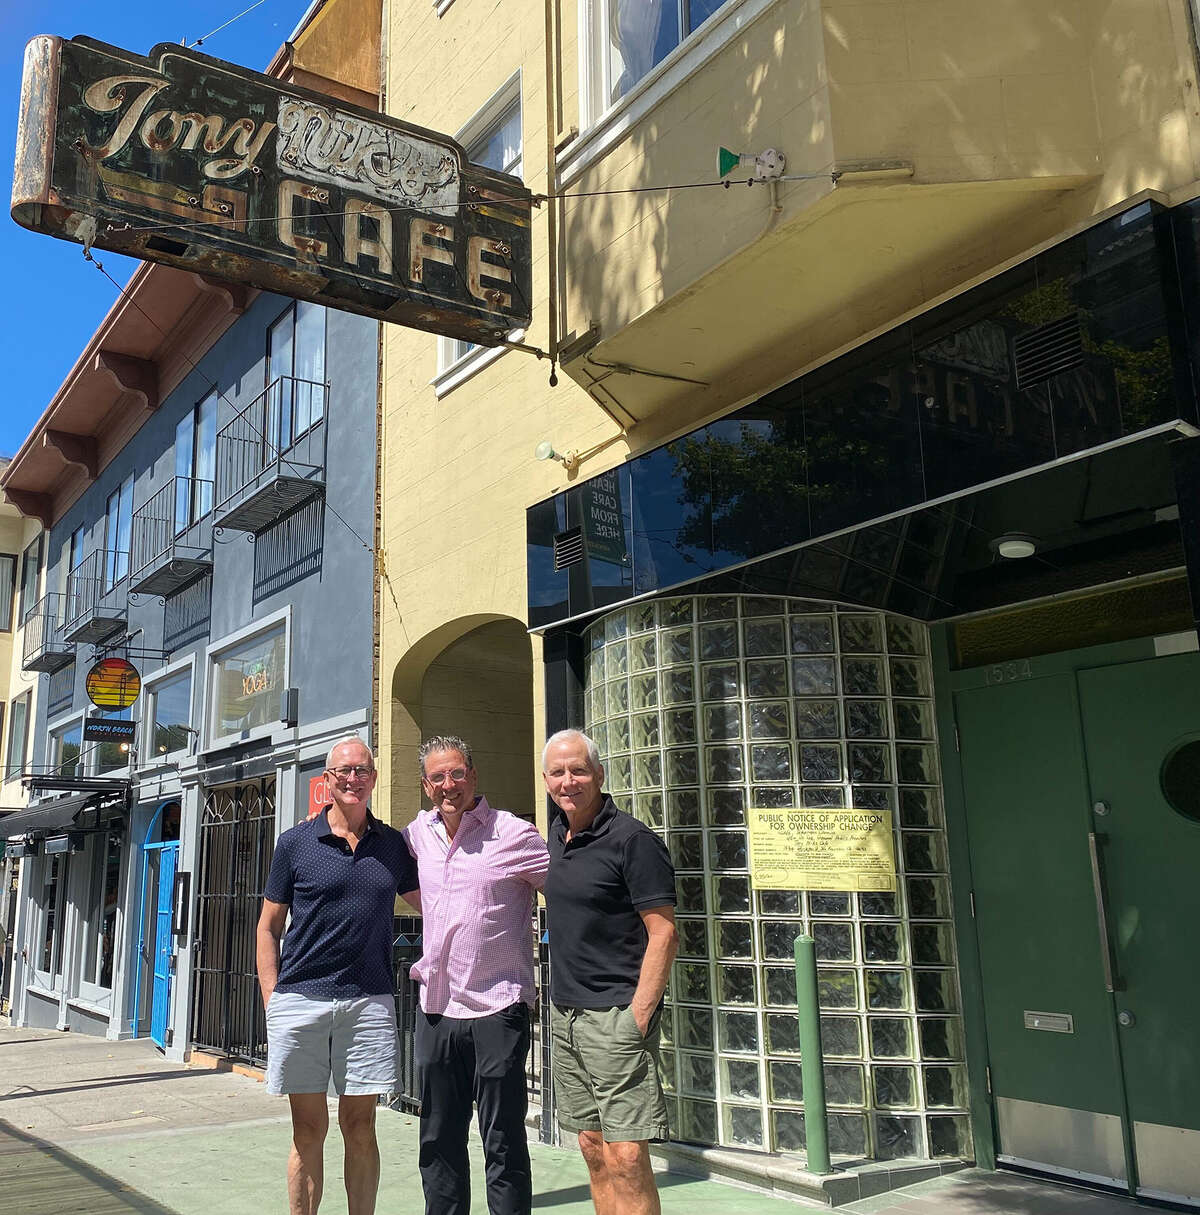 Los antiguos propietarios Dan Kent (izquierda) y Mark Nicco (derecha) vendieron recientemente el bar Tony Nik's a un cliente de toda la vida, Sebastian Scala (centro).